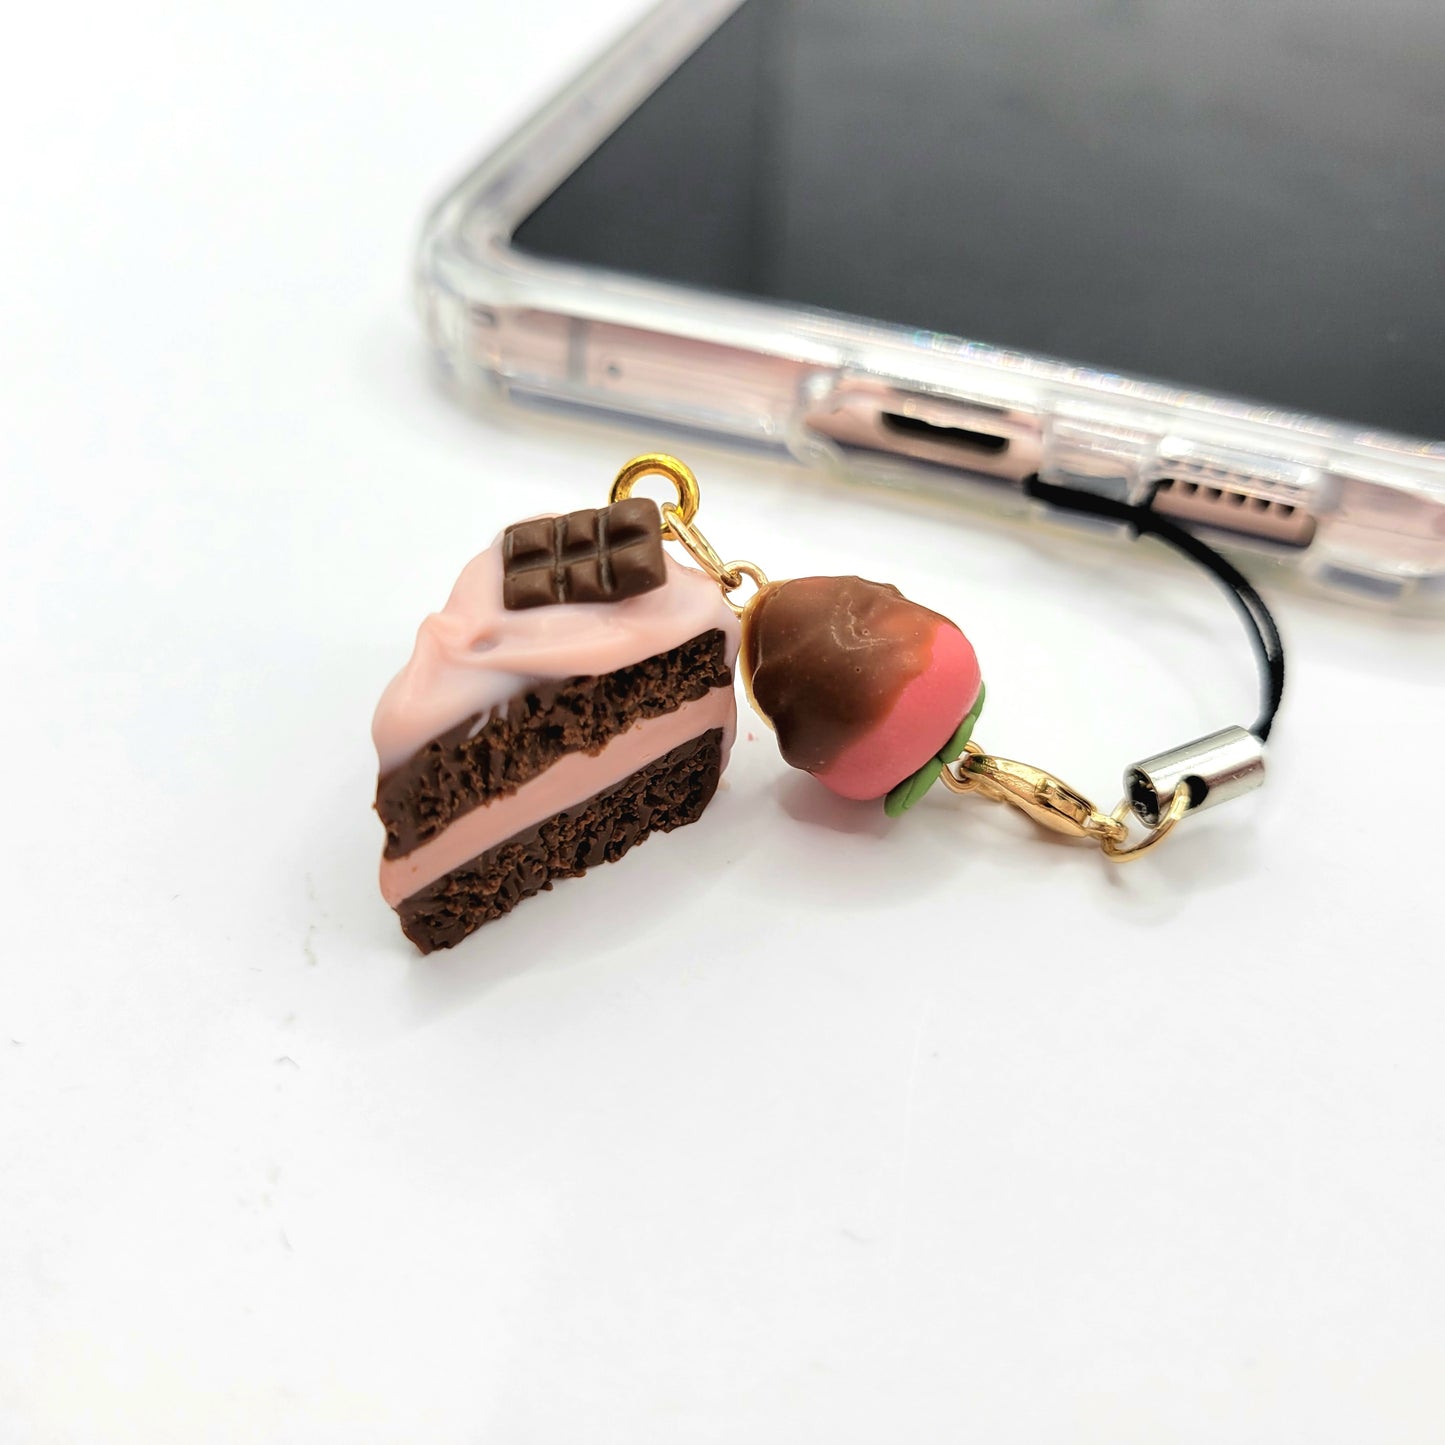 Cake Slice Phone Charm and Keychain